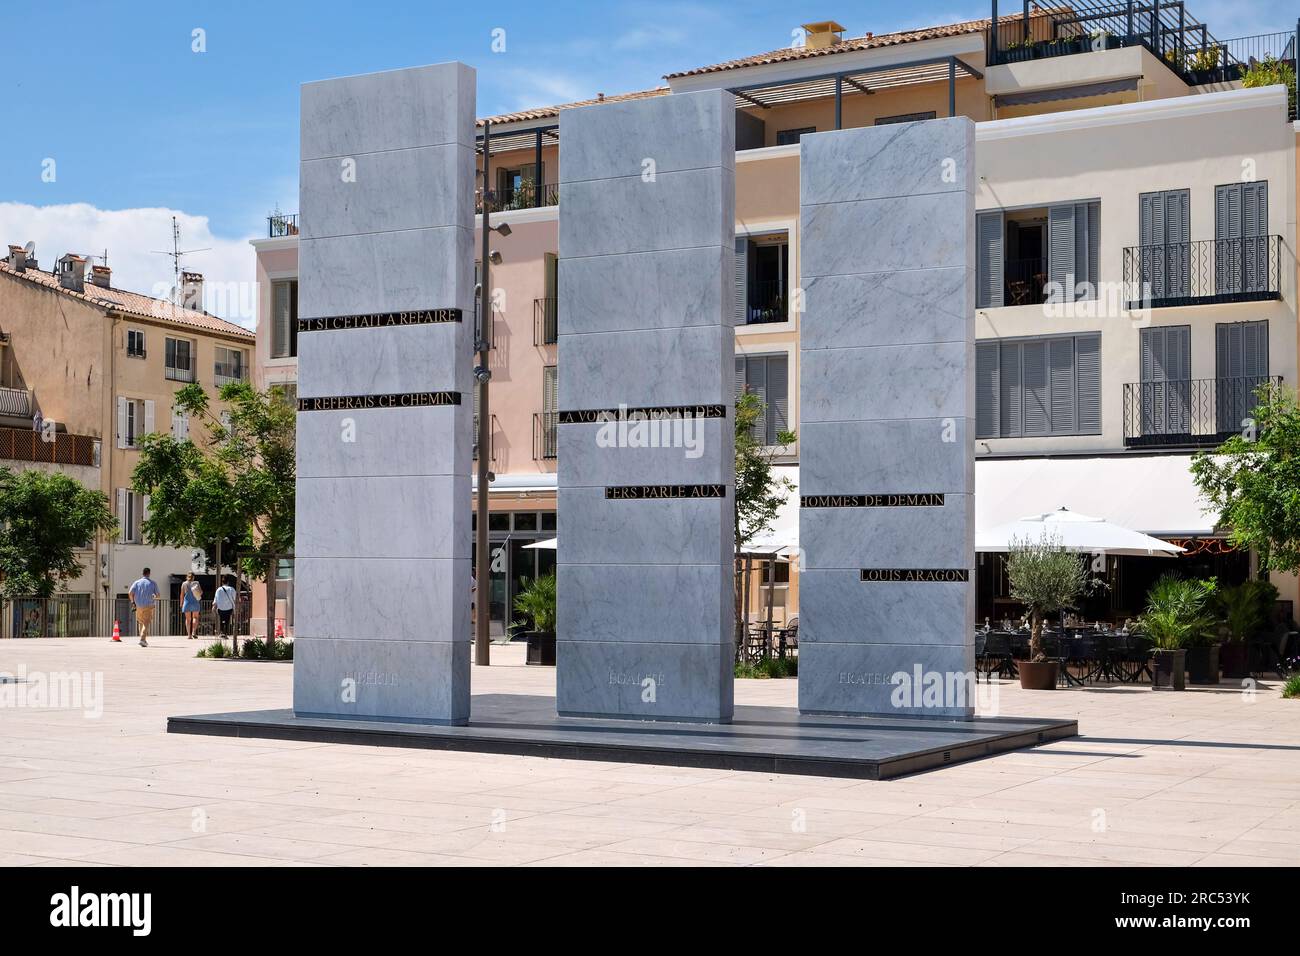 Gedenkskulptur, die Libere, Egalite und Fraternite auf dem Place des martyrs de la Resistance, Antibes, Cote d'Azur, Frankreich zeigt Stockfoto